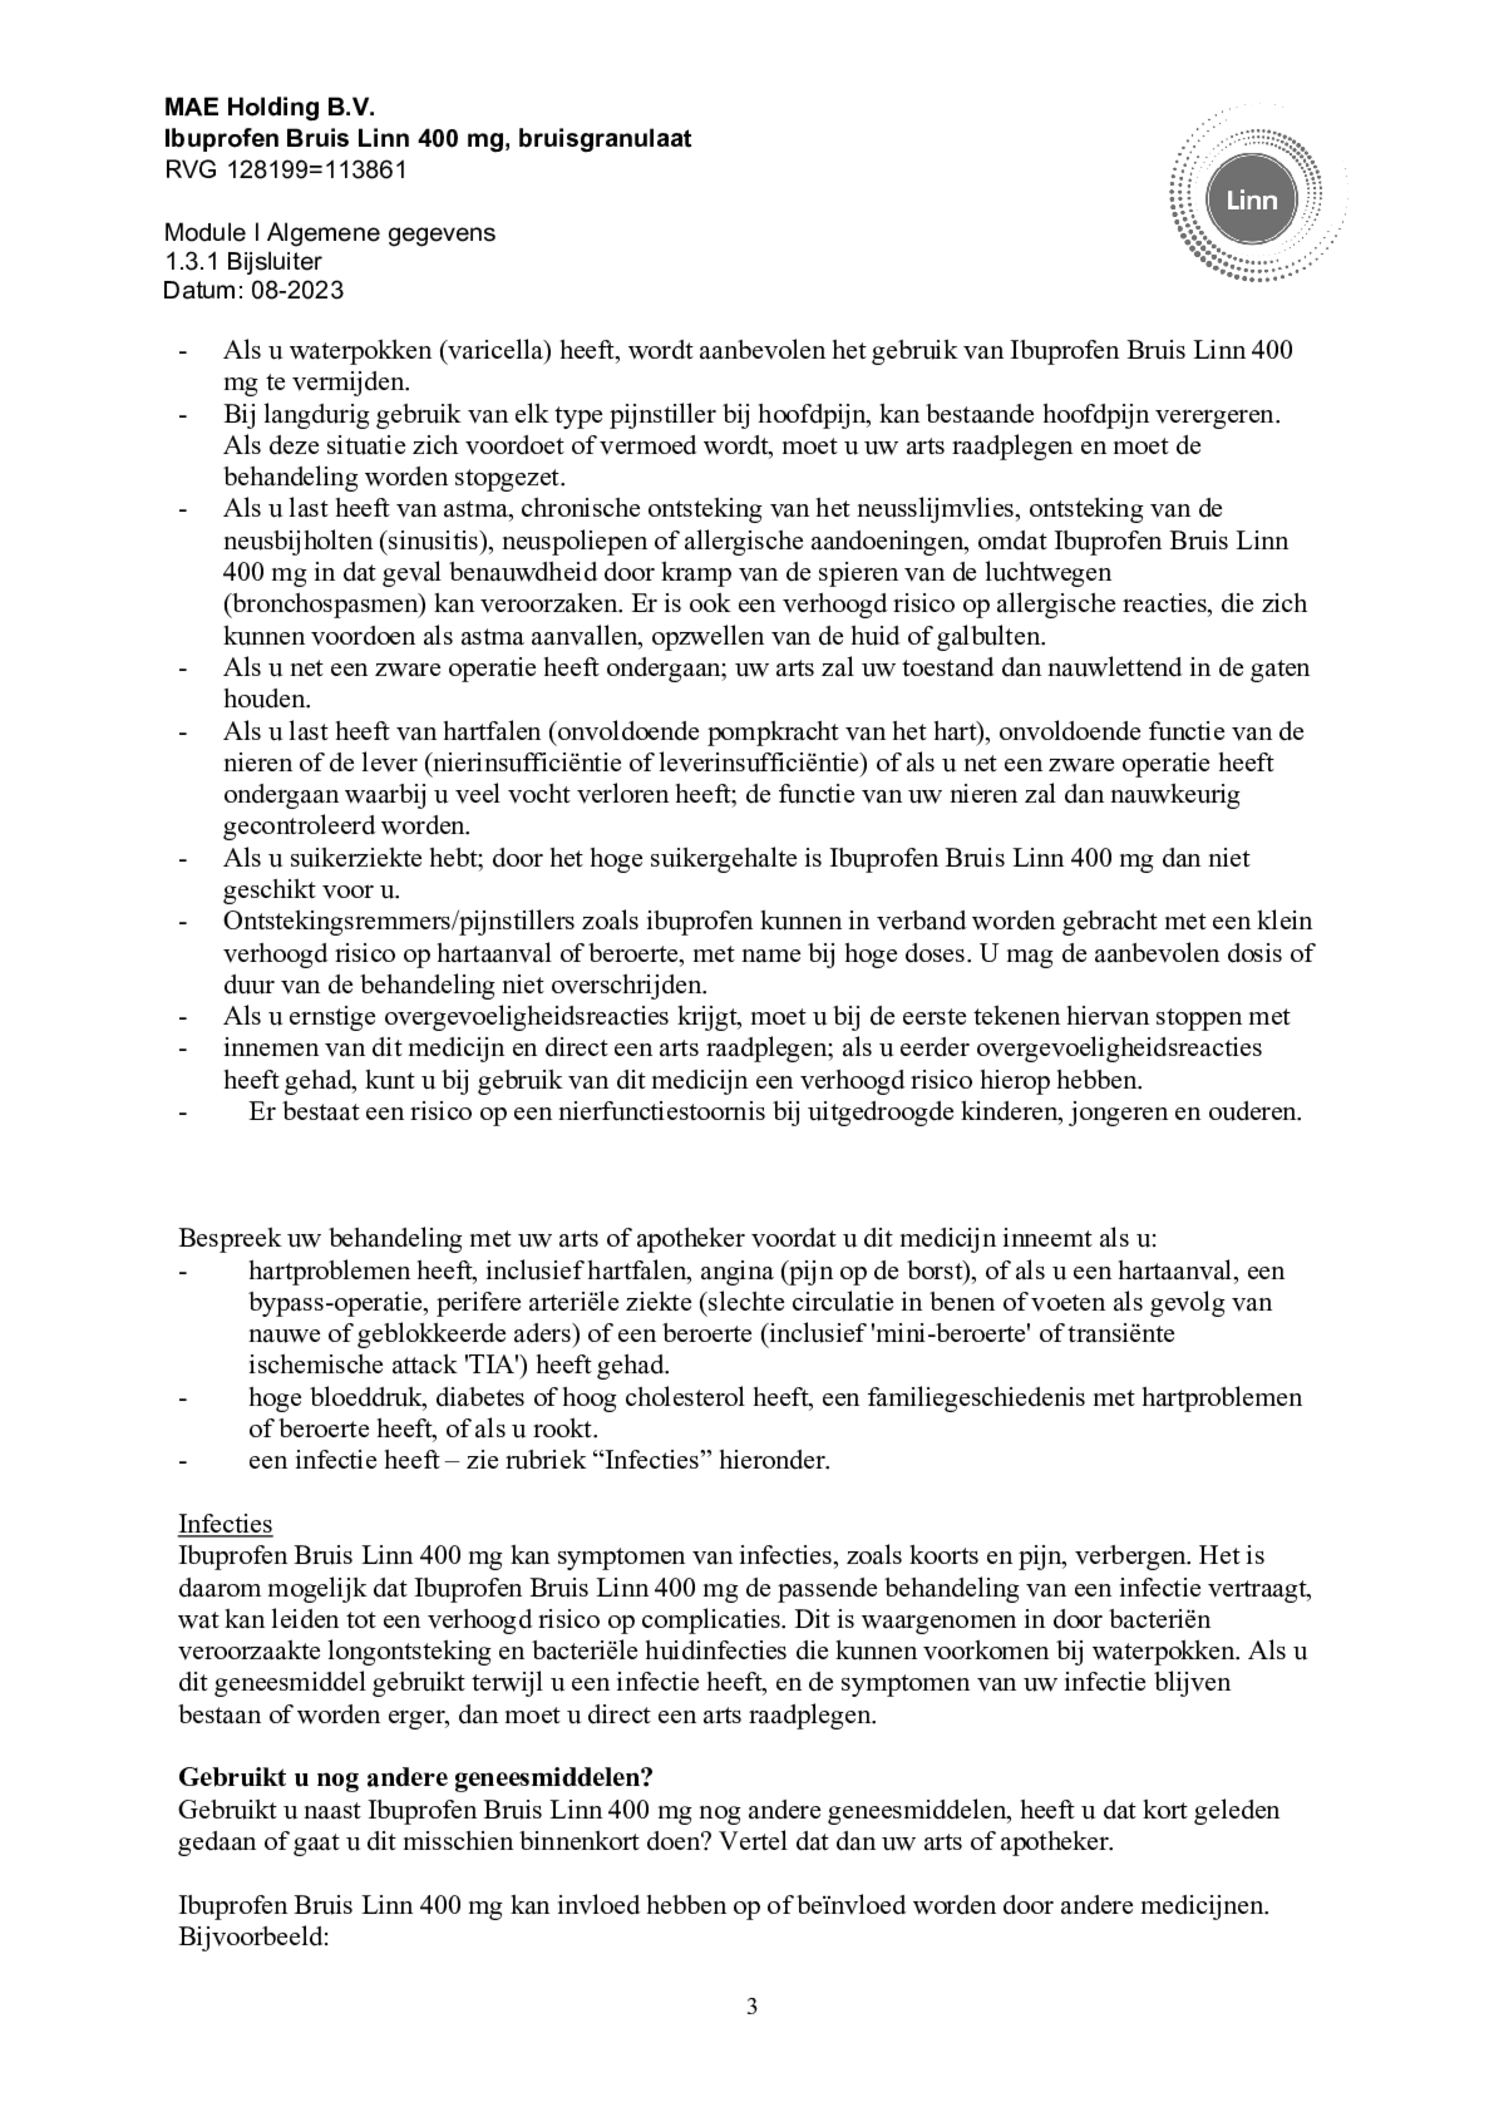 Ibuprofen Bruis Sachets 400mg afbeelding van document #3, bijsluiter